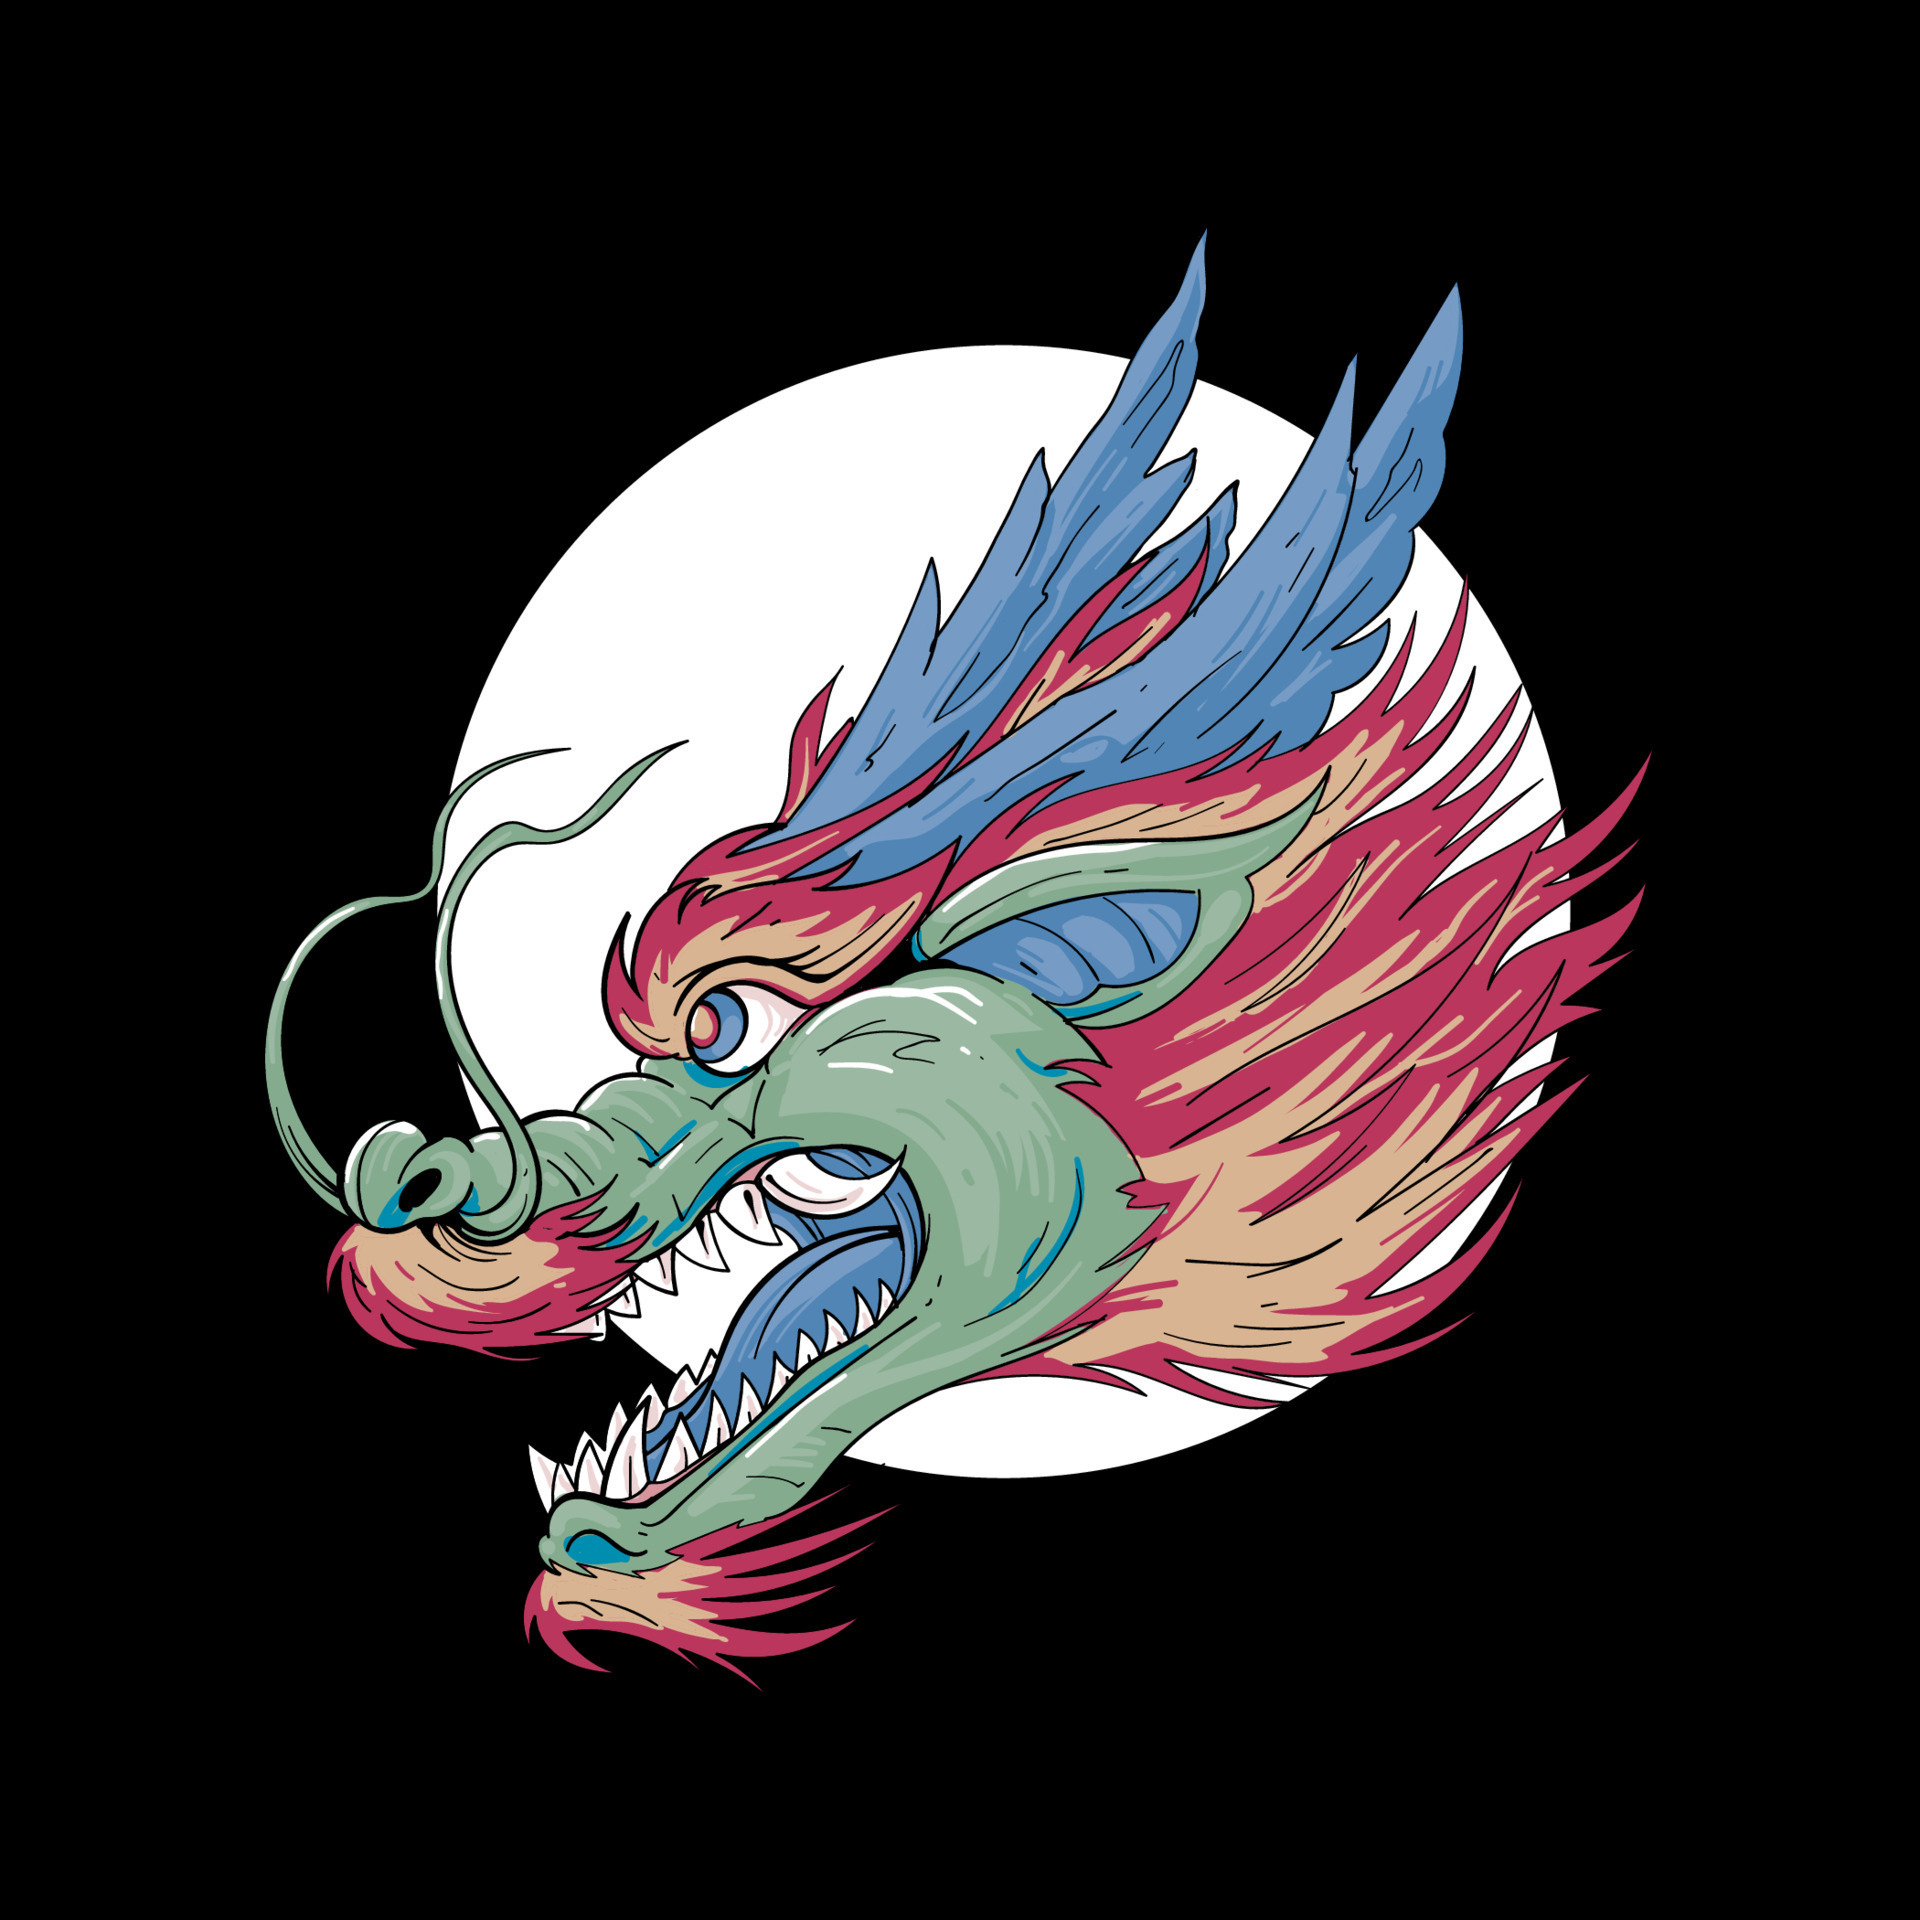 Ilustração de cabeça de dragão azul, Vetor Premium